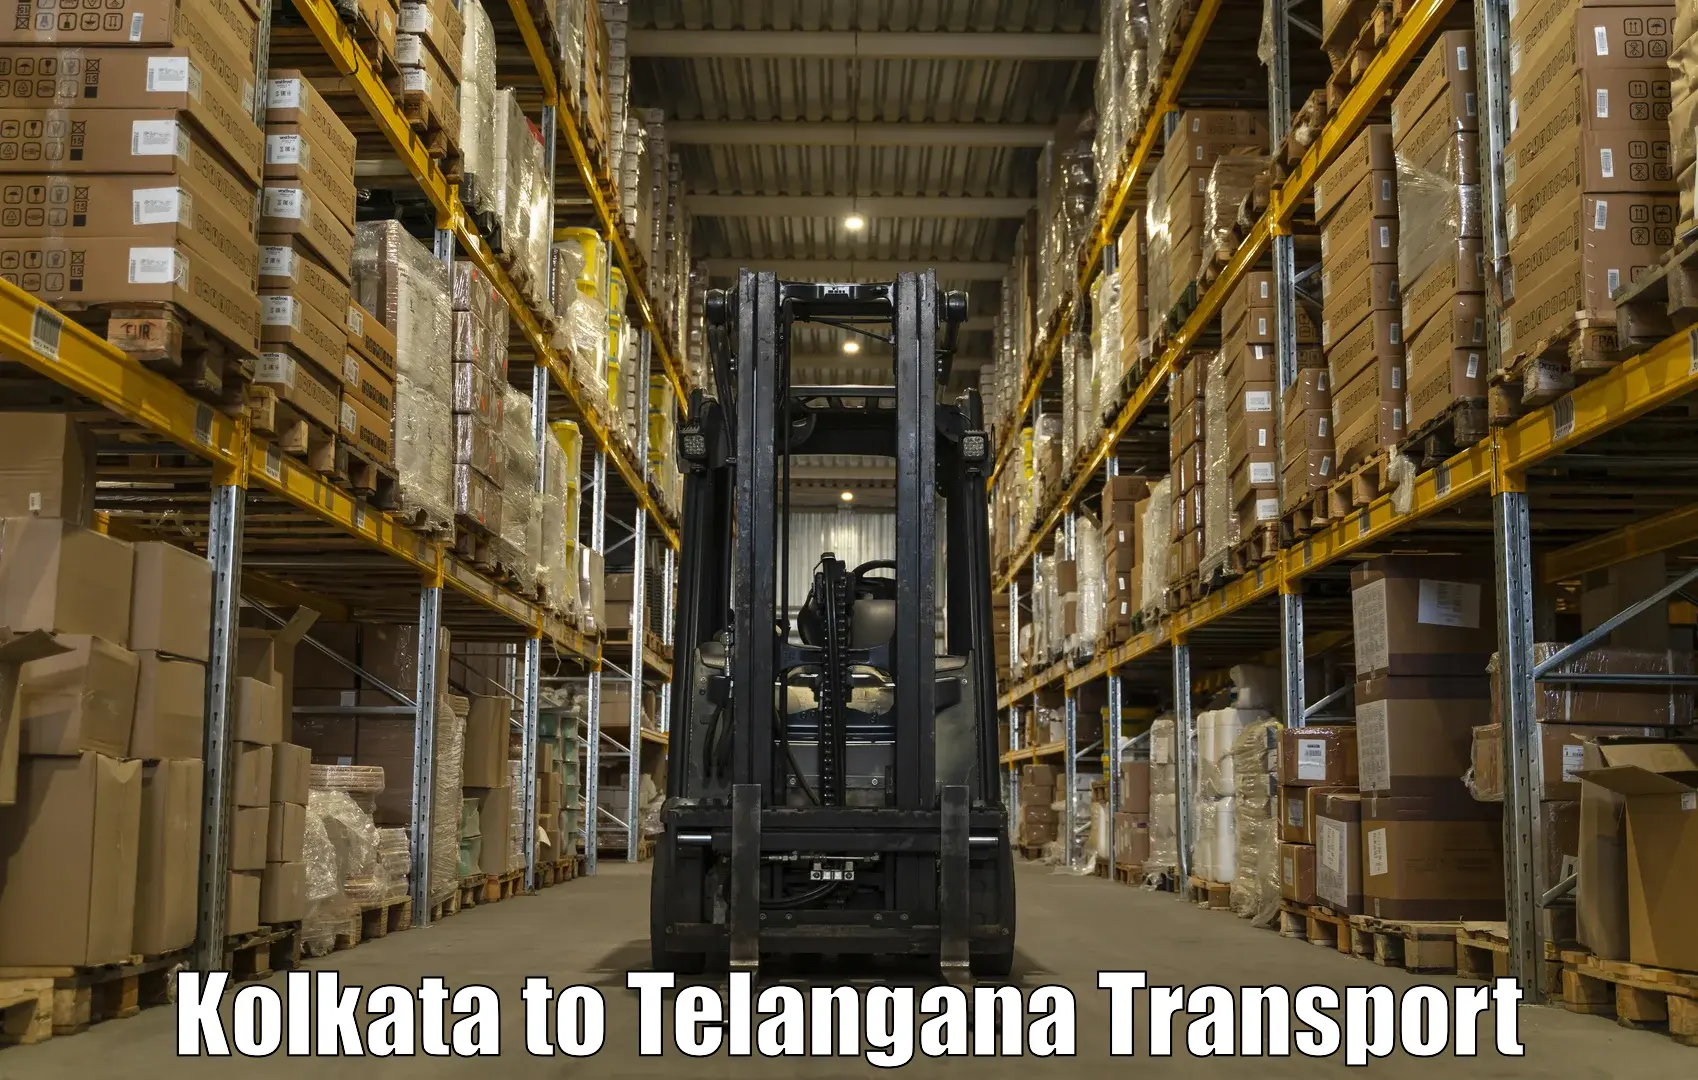 Nationwide transport services Kolkata to Vemulawada